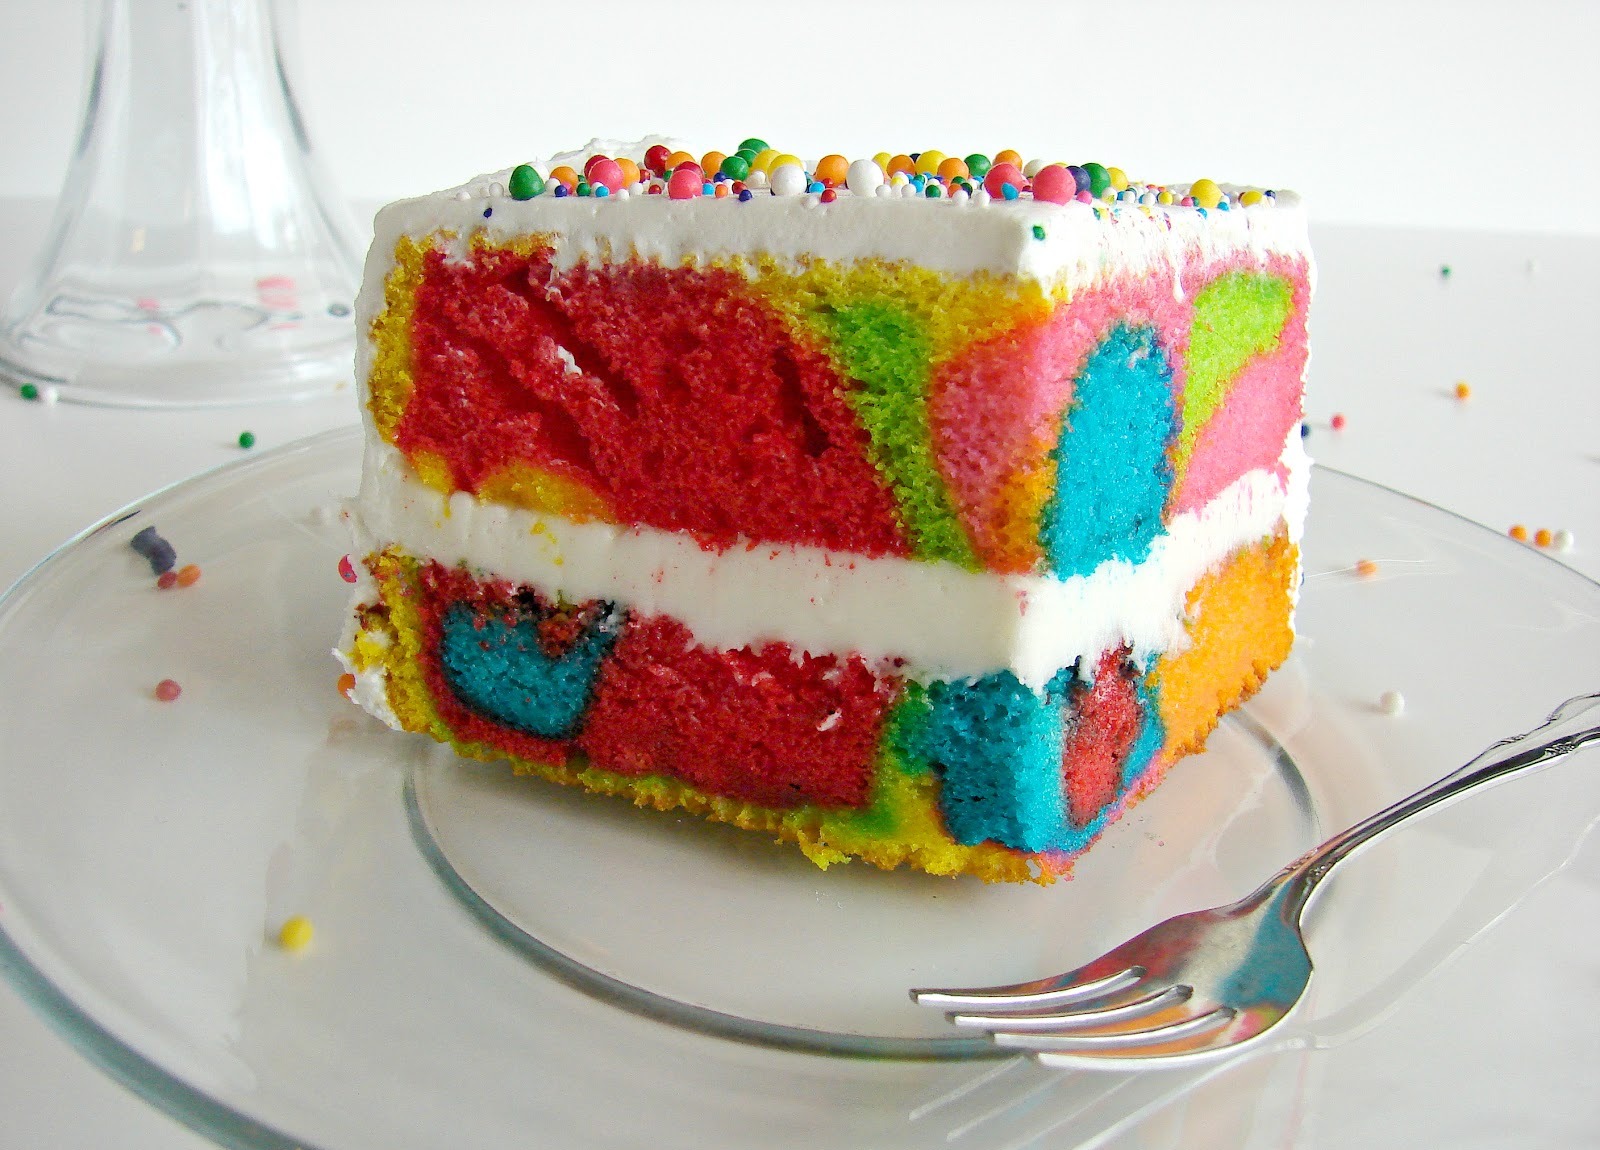 کیک رنگین کمان، 2 دستور پخت ساده اما خوشمزه